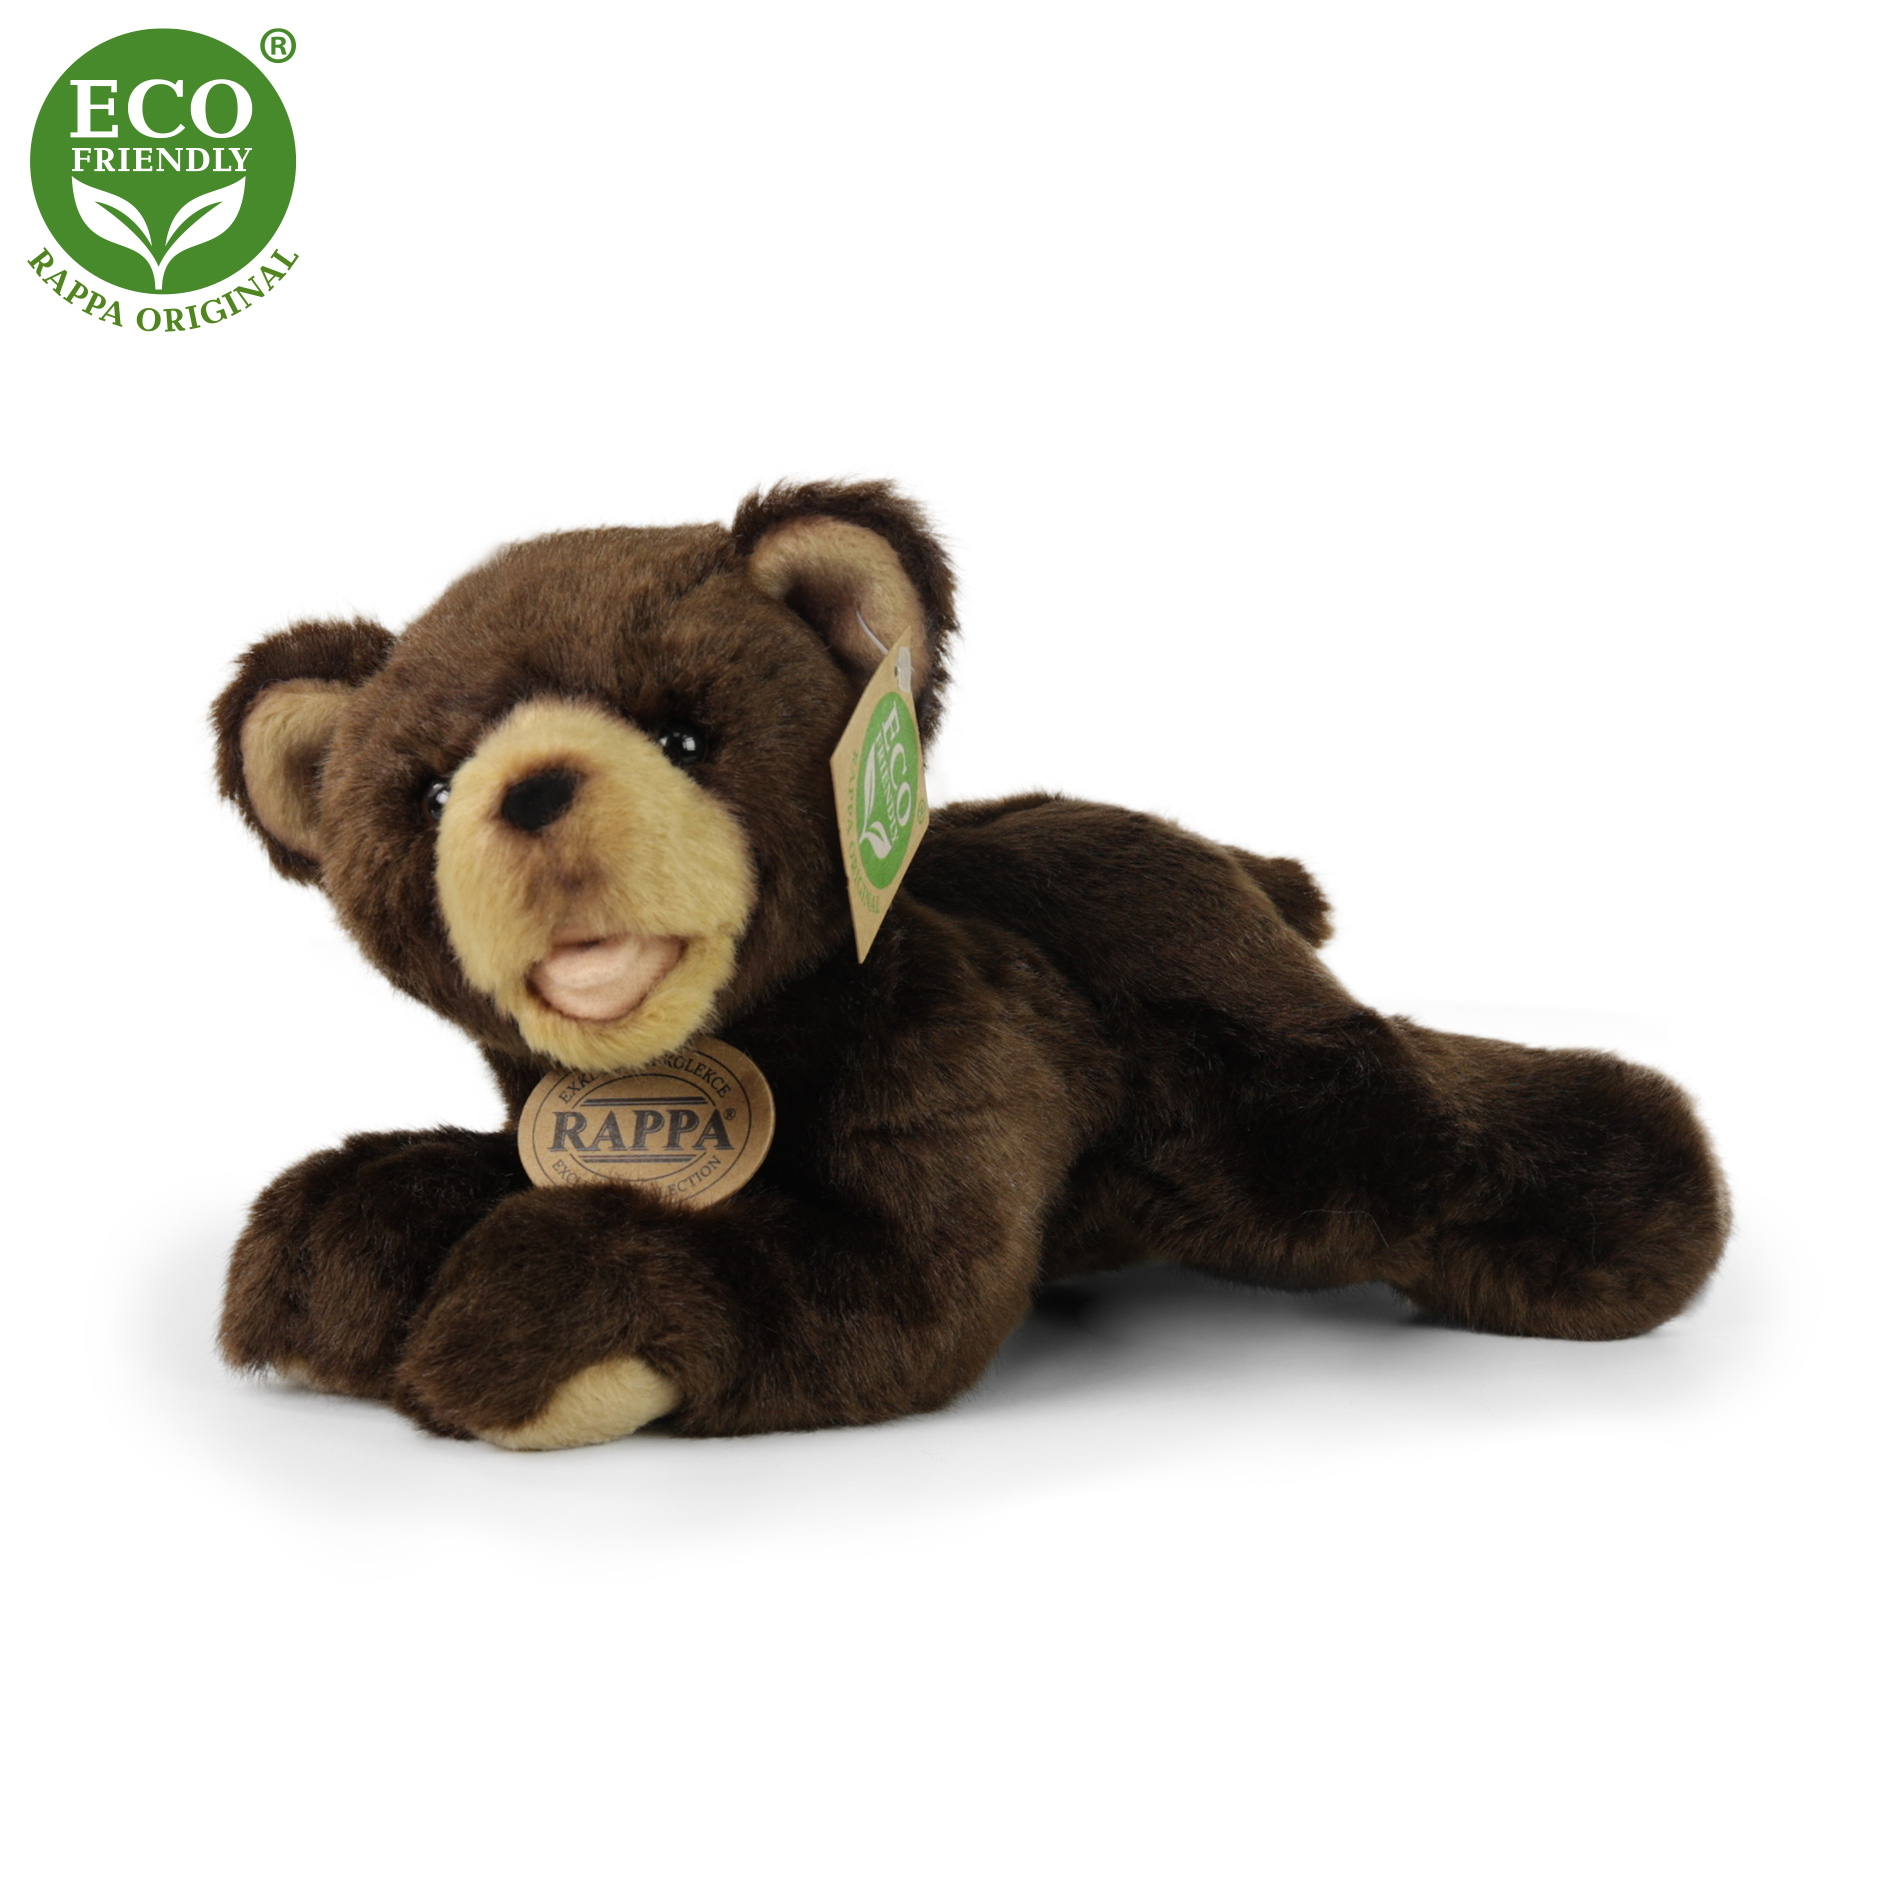 Rappa Eco-Friendly - Plyšový medvěd tmavě hnědý ležící 24 cm